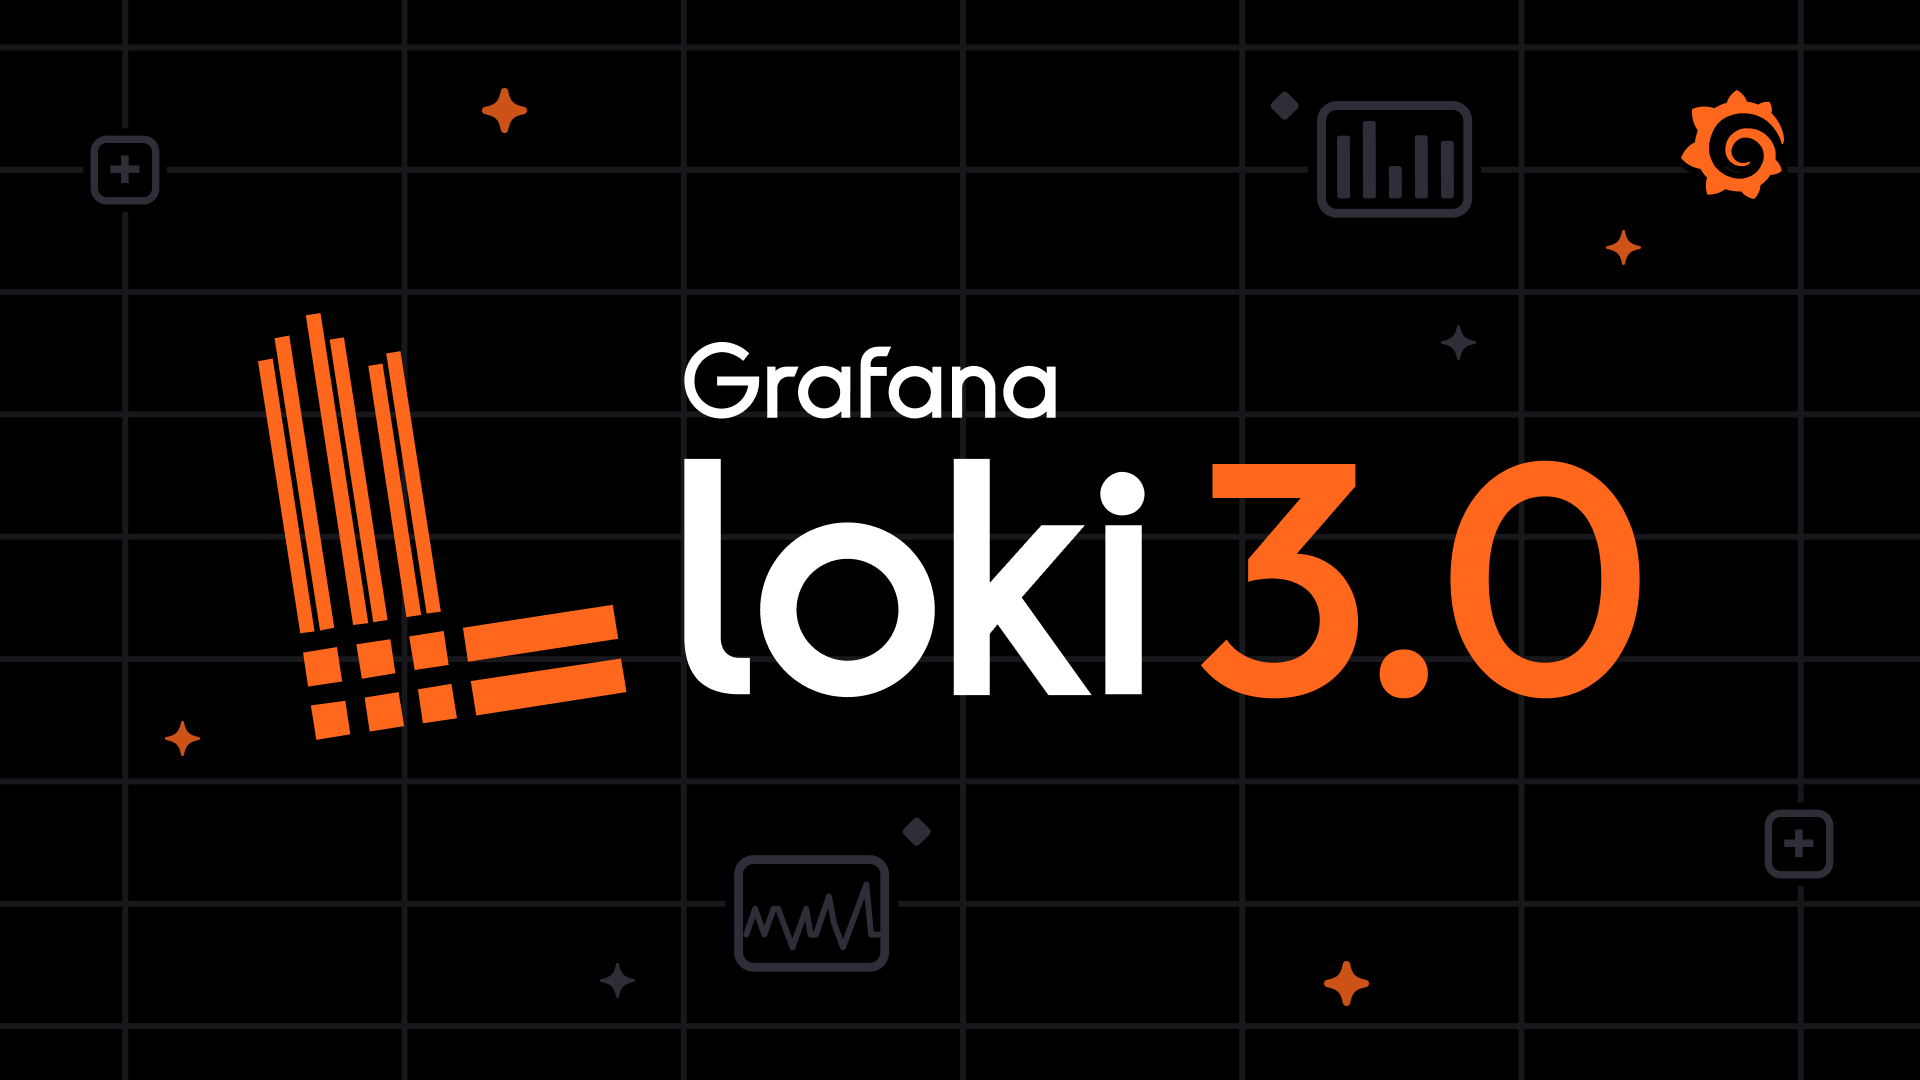 The Grafana Loki logo.